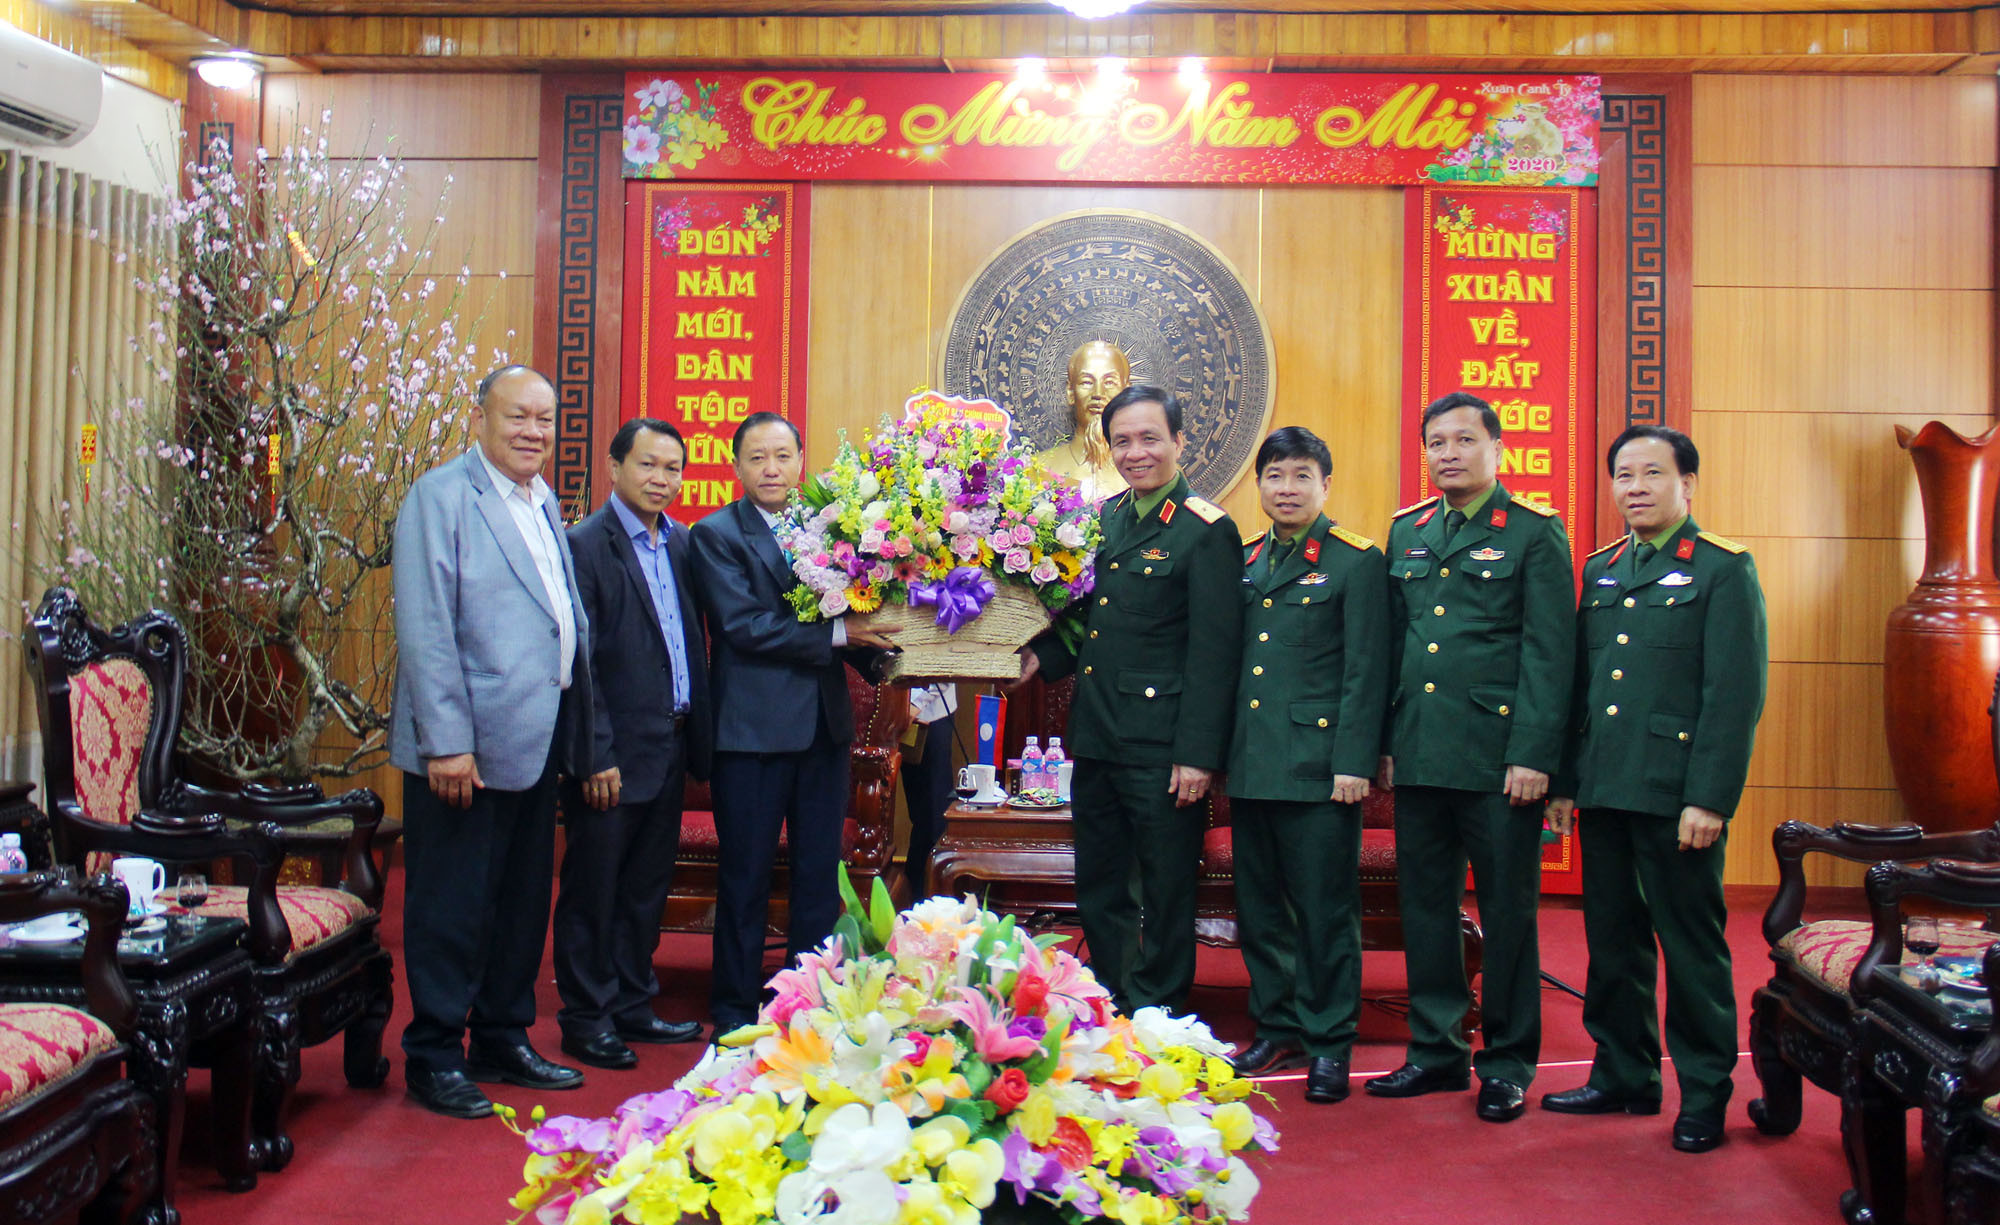 Đoàn công tác tỉnh Xiêng Khoảng trao tặng lẵng hoa tươi thắm và gửi lời chúc mừng năm mới tới các chiến sỹ, cán bộ Quân Khu 4. Ảnh: Thanh Quỳnh